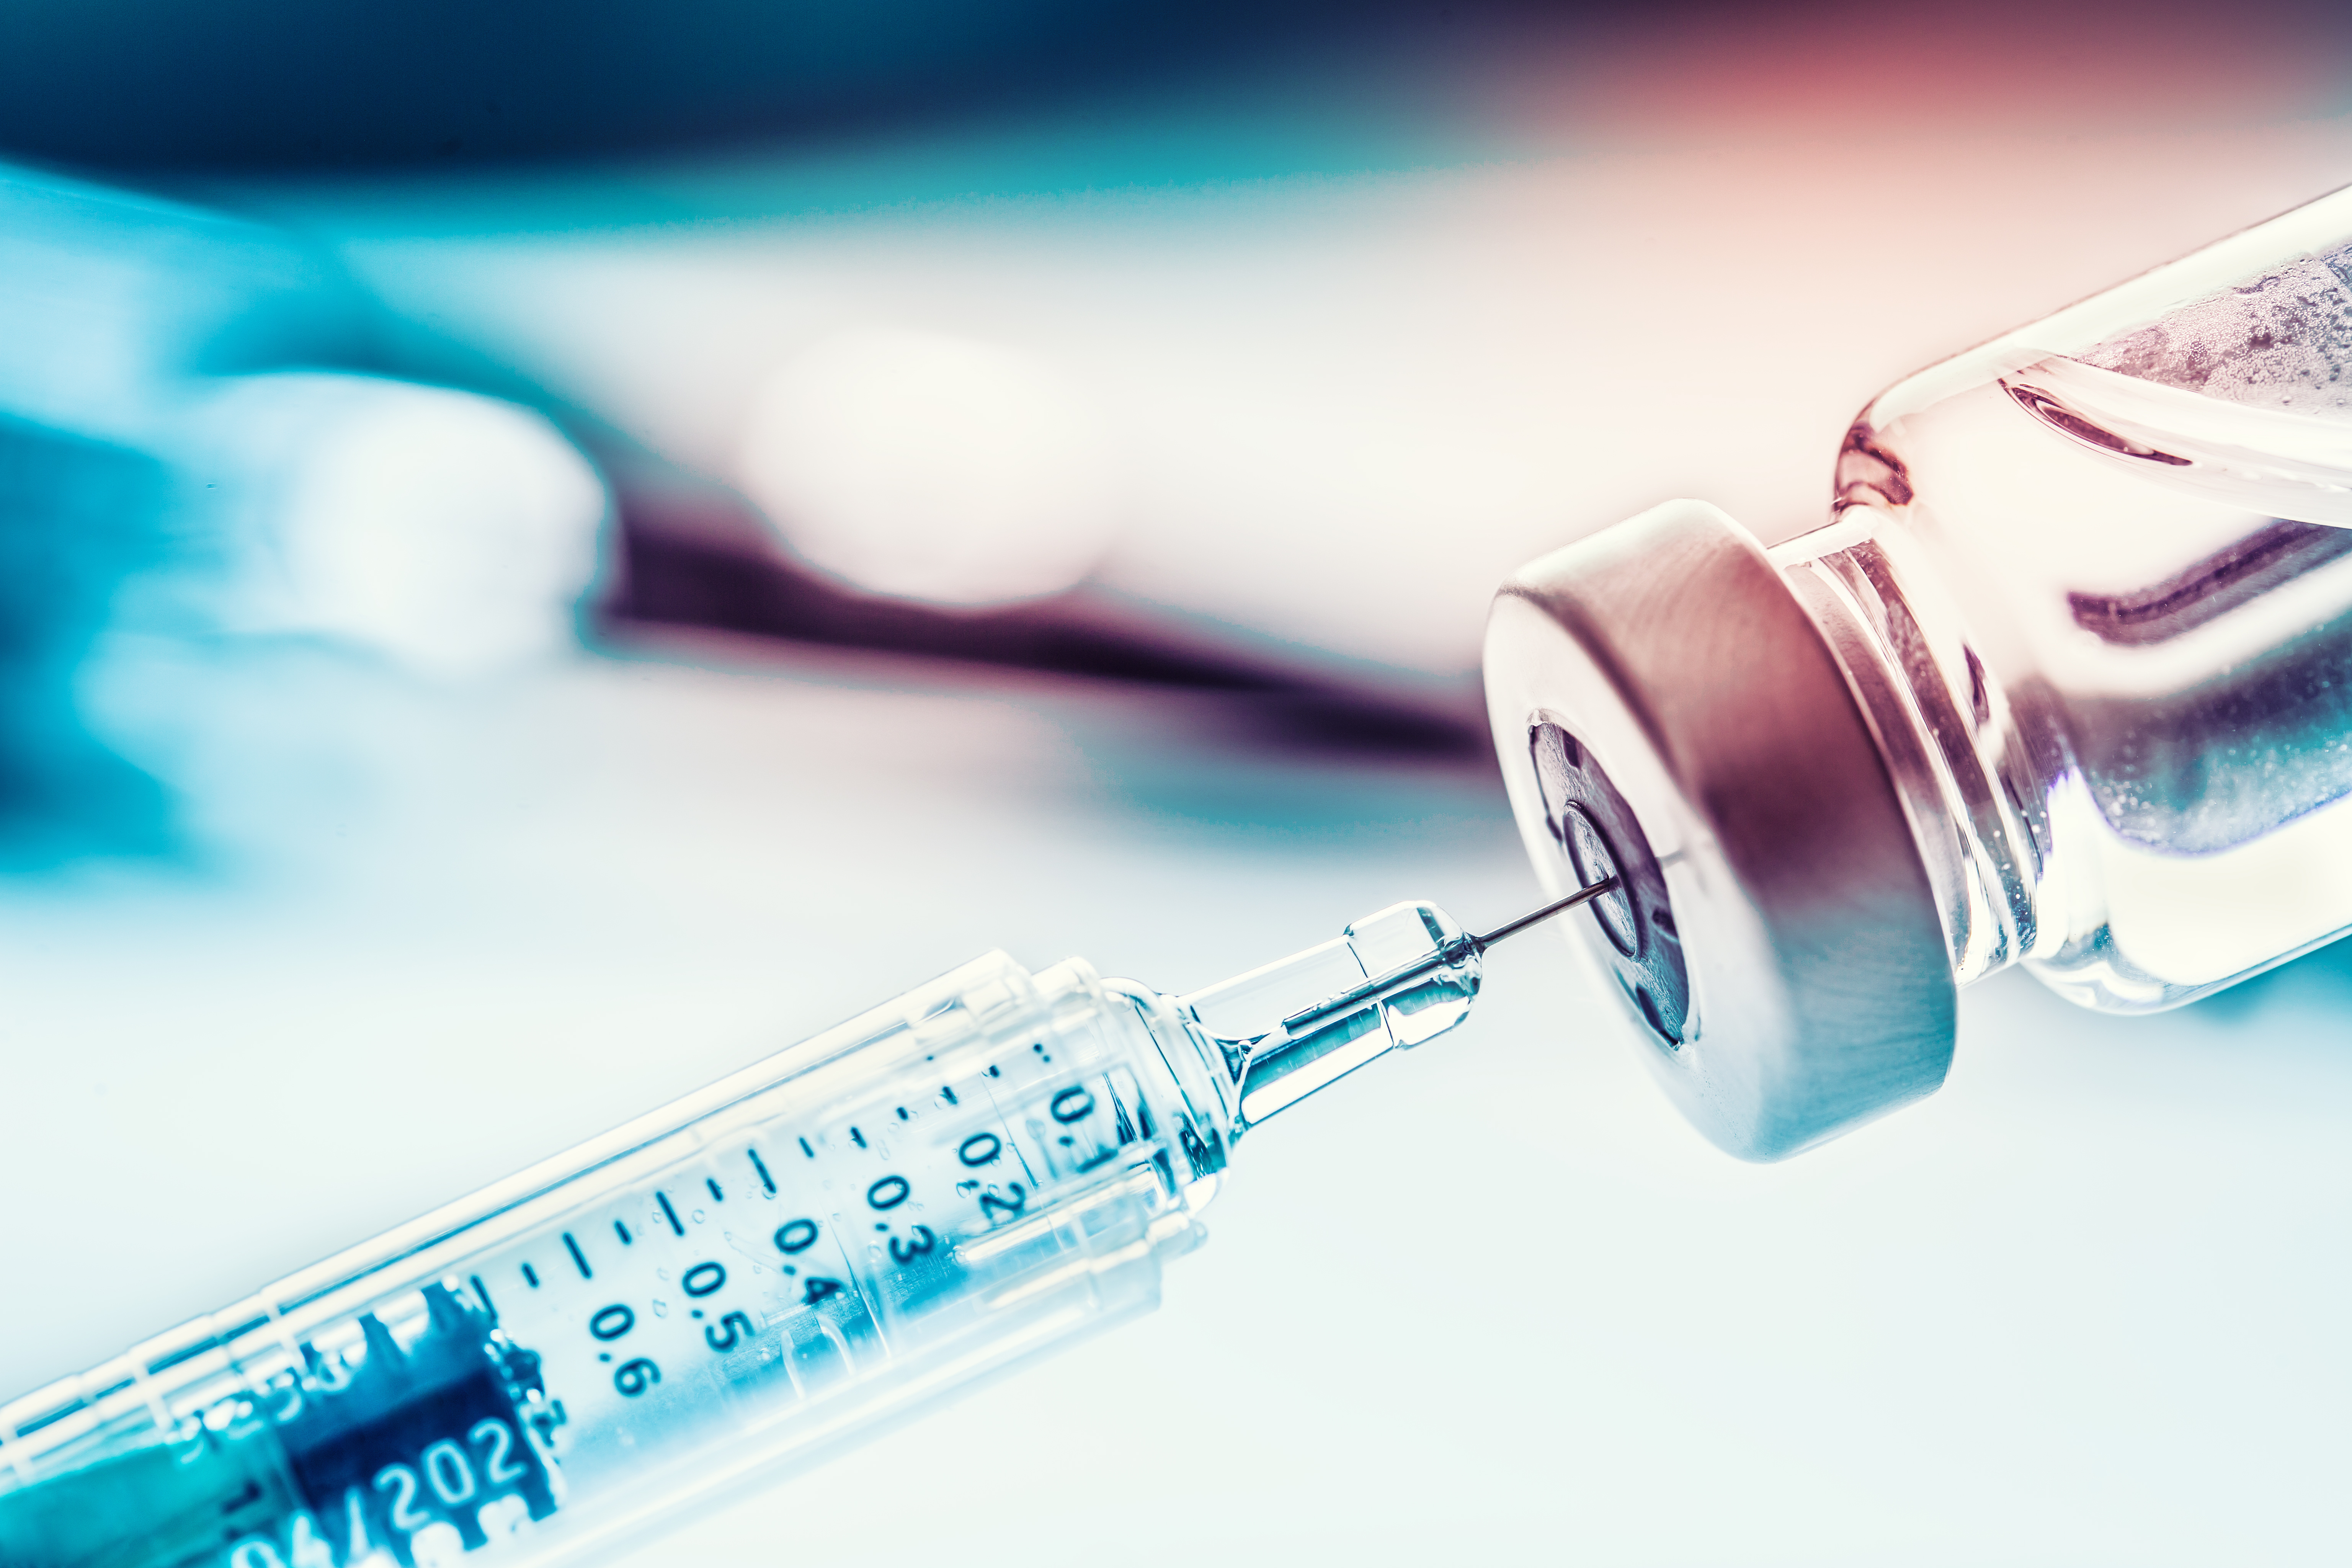 Speciaal verslag 19/2022: De aankoop door de EU van COVID-19-vaccins - Voldoende doses veiliggesteld na aanvankelijke uitdagingen, maar prestaties van het proces niet voldoende beoordeeld